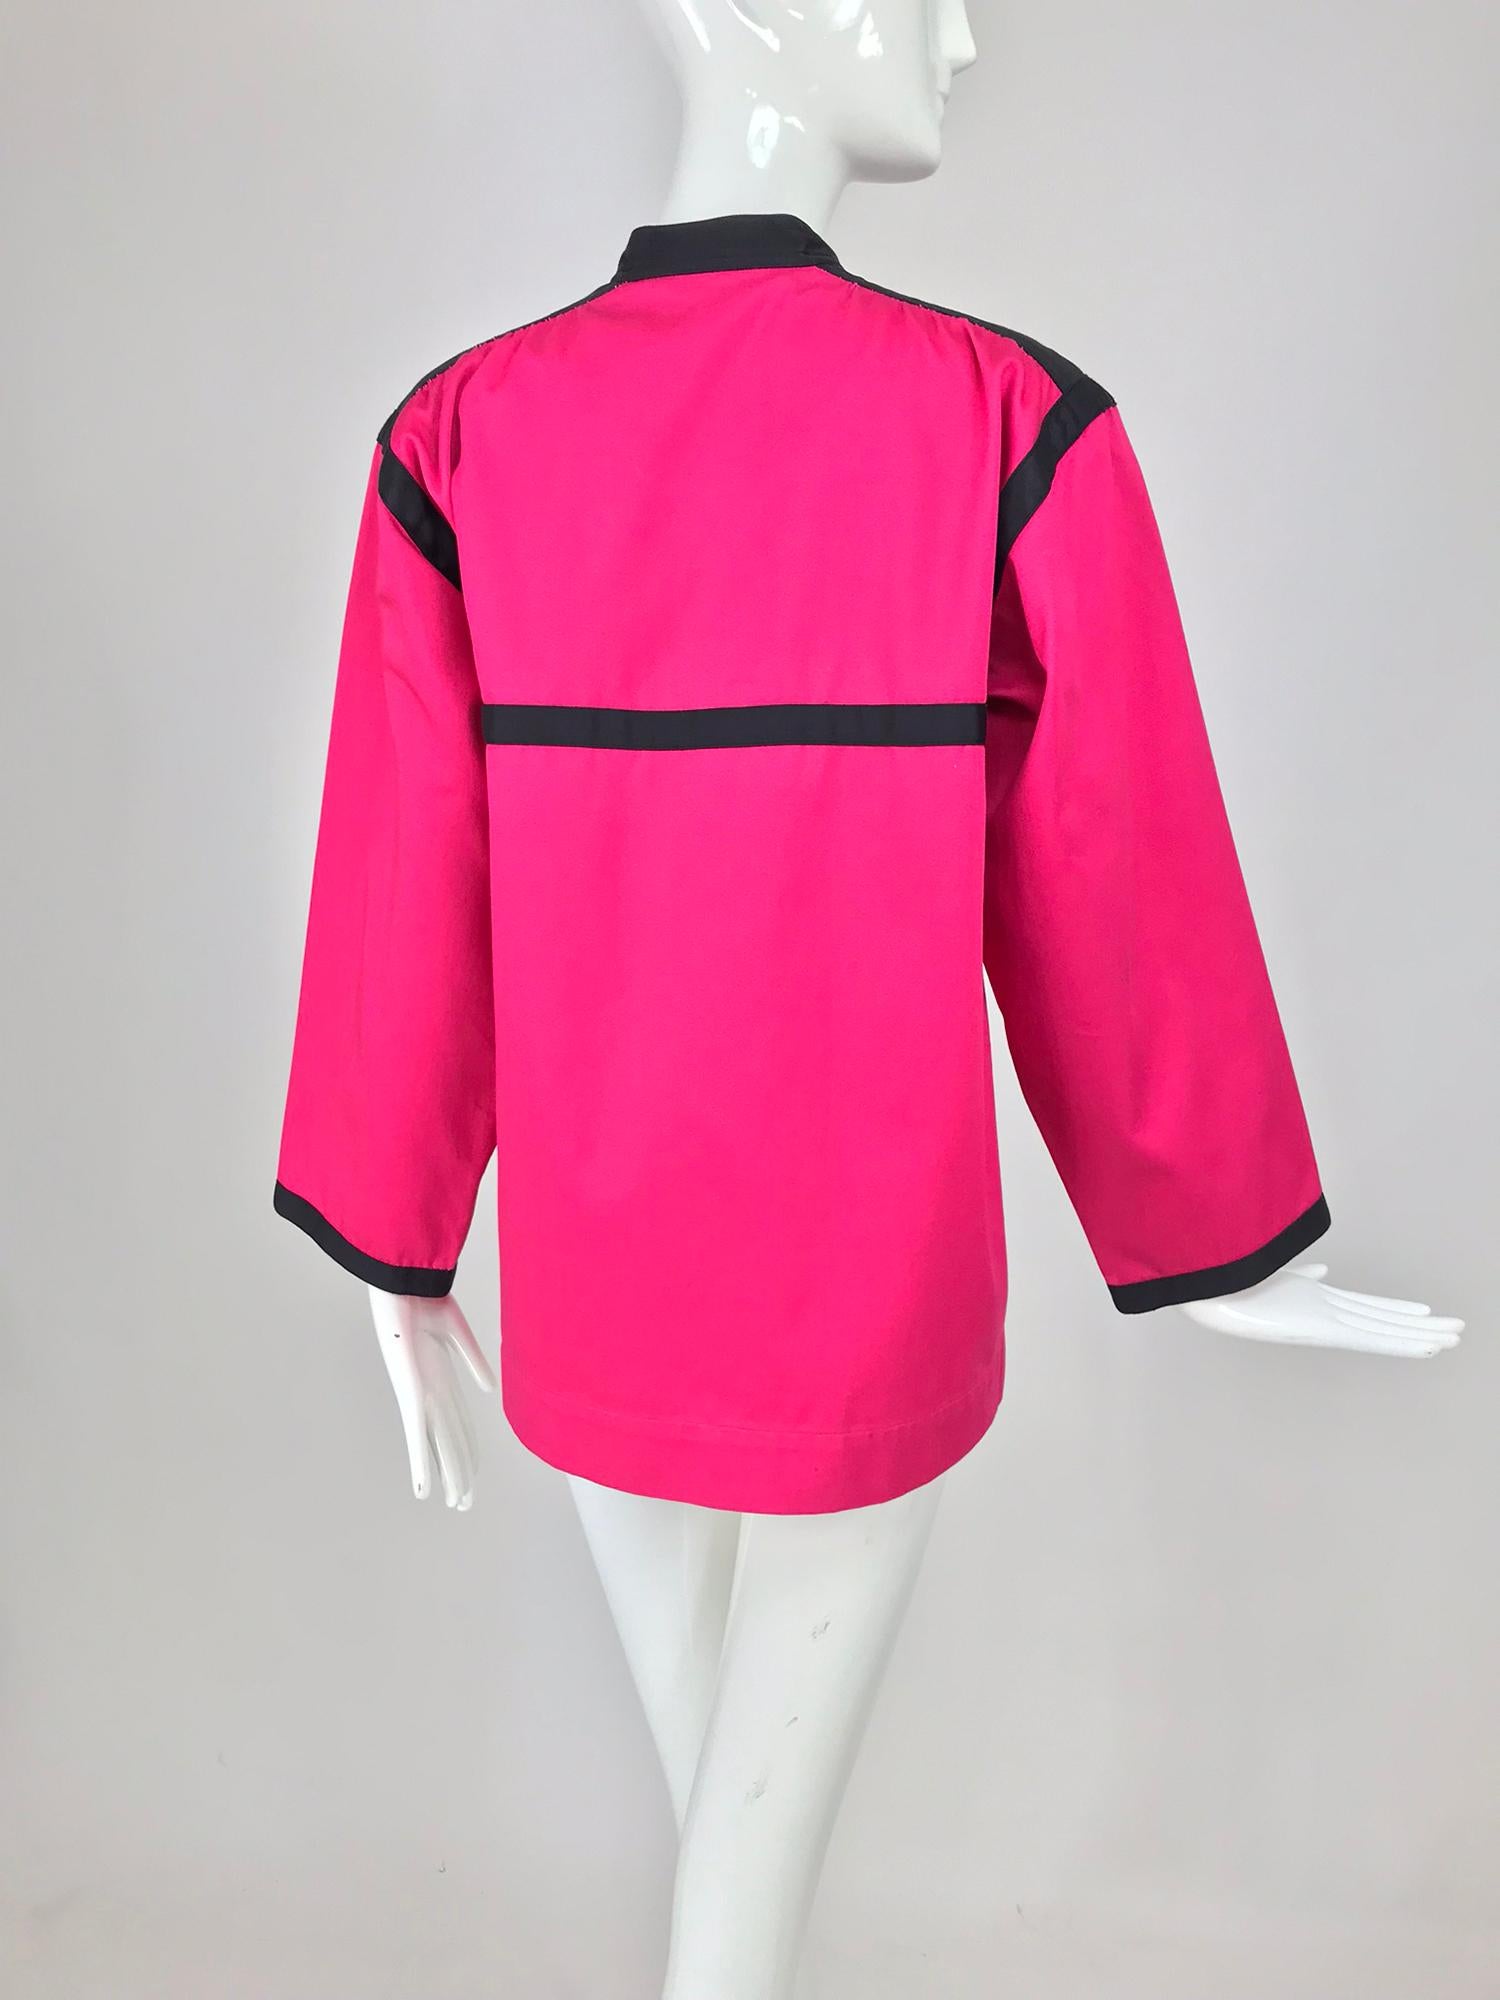 Yves Saint Laurent Hot Pink Colour Block Jacket 1970s For Sale 2